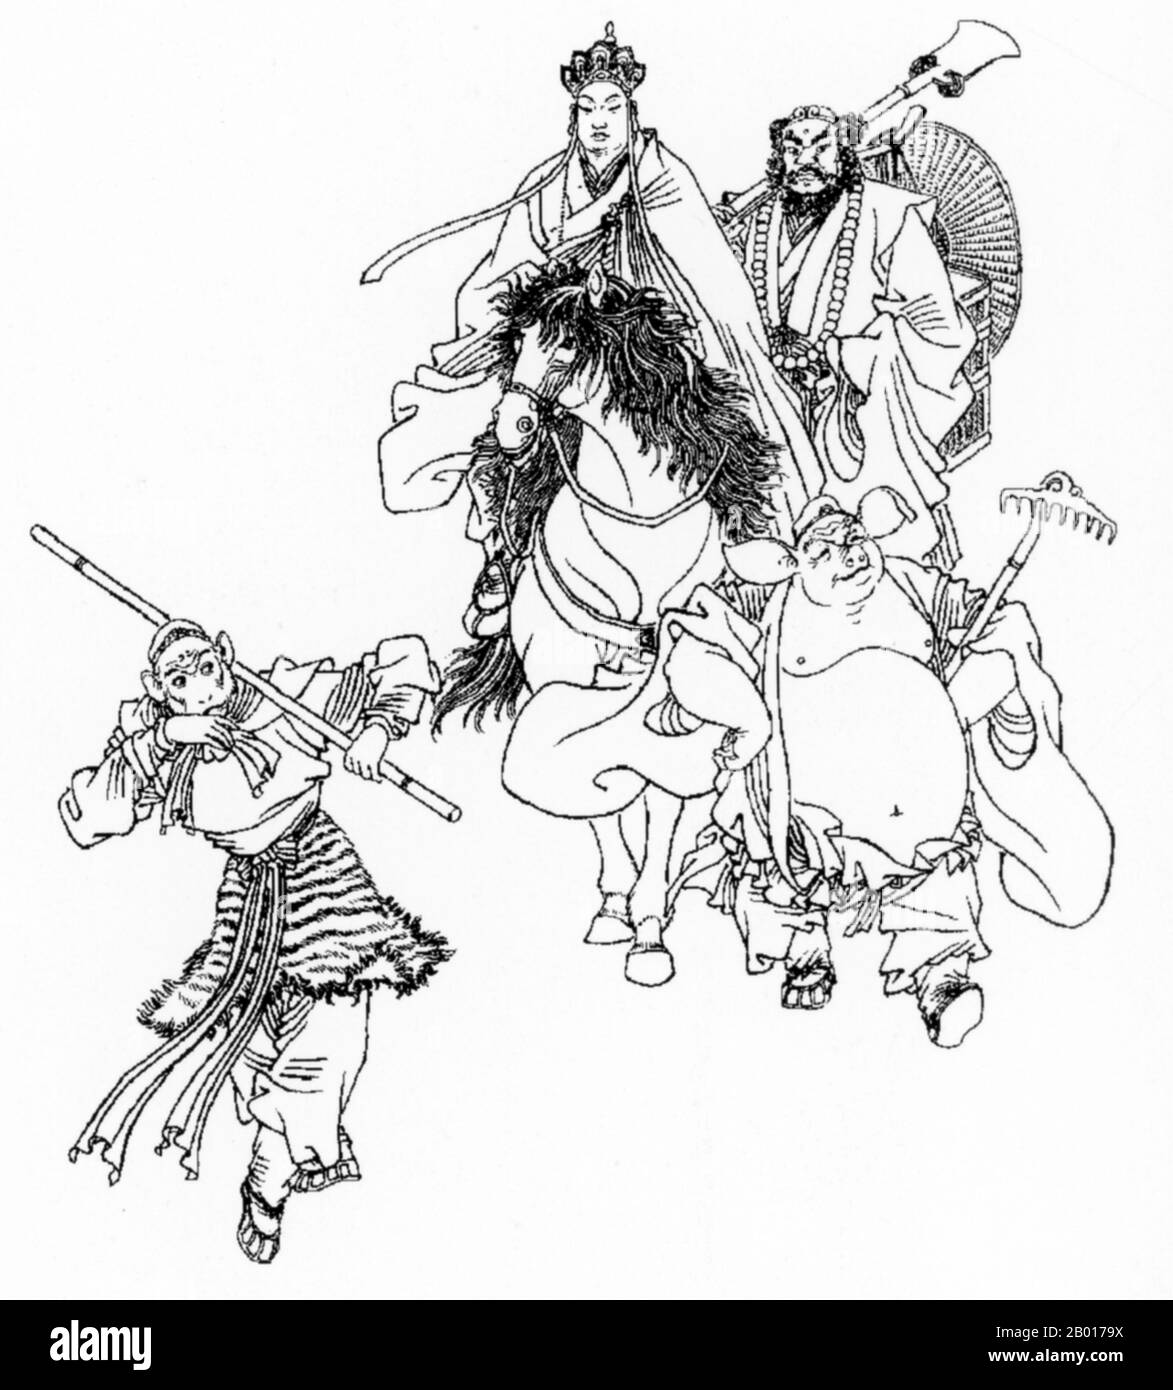 Chine: Dessin du moine Xuanzang avec ses compagnons du Xiyouji ou 'Voyage à l'Ouest'.Journey to the West est l'un des quatre grands romans classiques de la littérature chinoise.Initialement publié anonymement dans le 1590s pendant la dynastie Ming, son auteur a été attribué à l'érudit Wu Cheng'en depuis le 20th siècle.Dans les pays anglophones, cette histoire est aussi souvent connue sous le nom de singe.Le roman est un récit fictif du pèlerinage légendaire en Inde du moine bouddhiste Xuanzang.Le moine s'est rendu dans les régions occidentales pendant la dynastie Tang. Banque D'Images